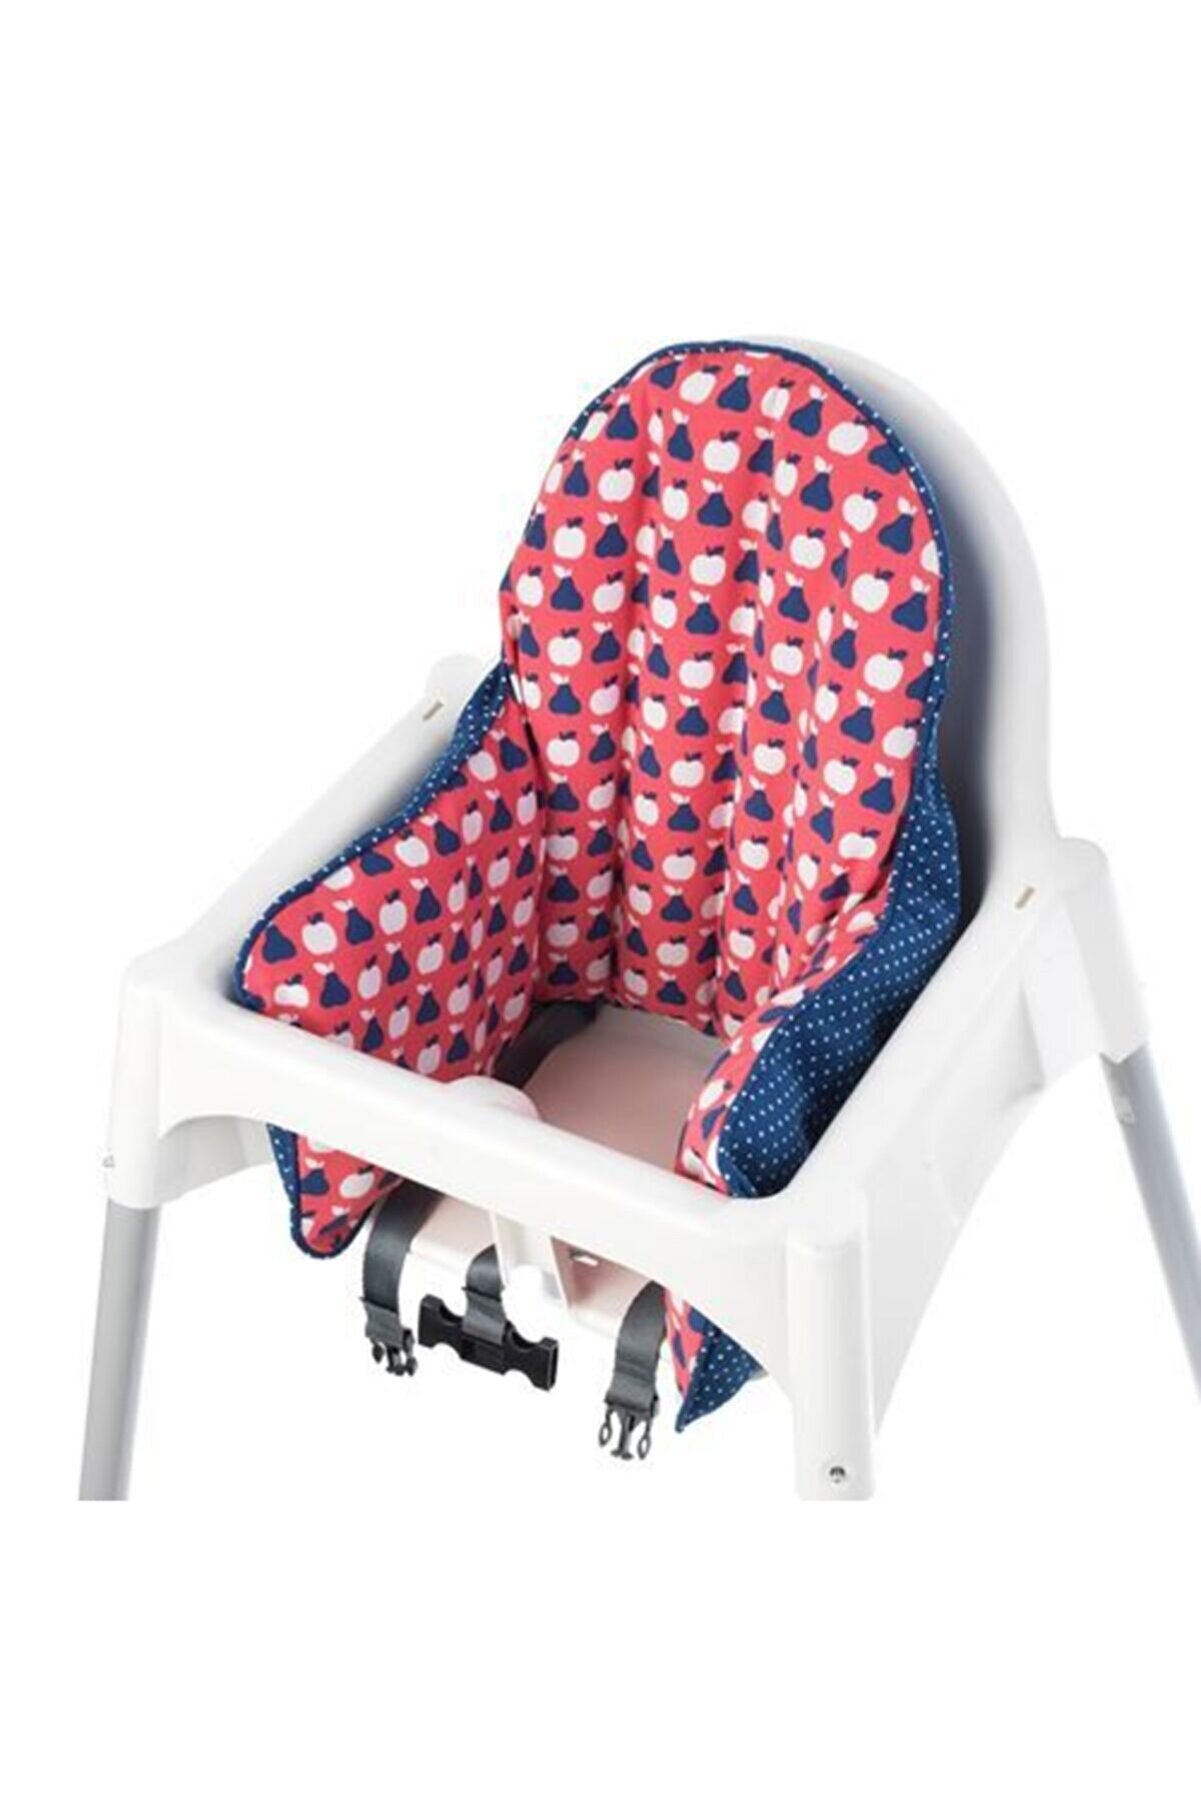 IKEA Antılop Mama Sandalyesi Için Destek Minderi + Şişme Iç Yastığı